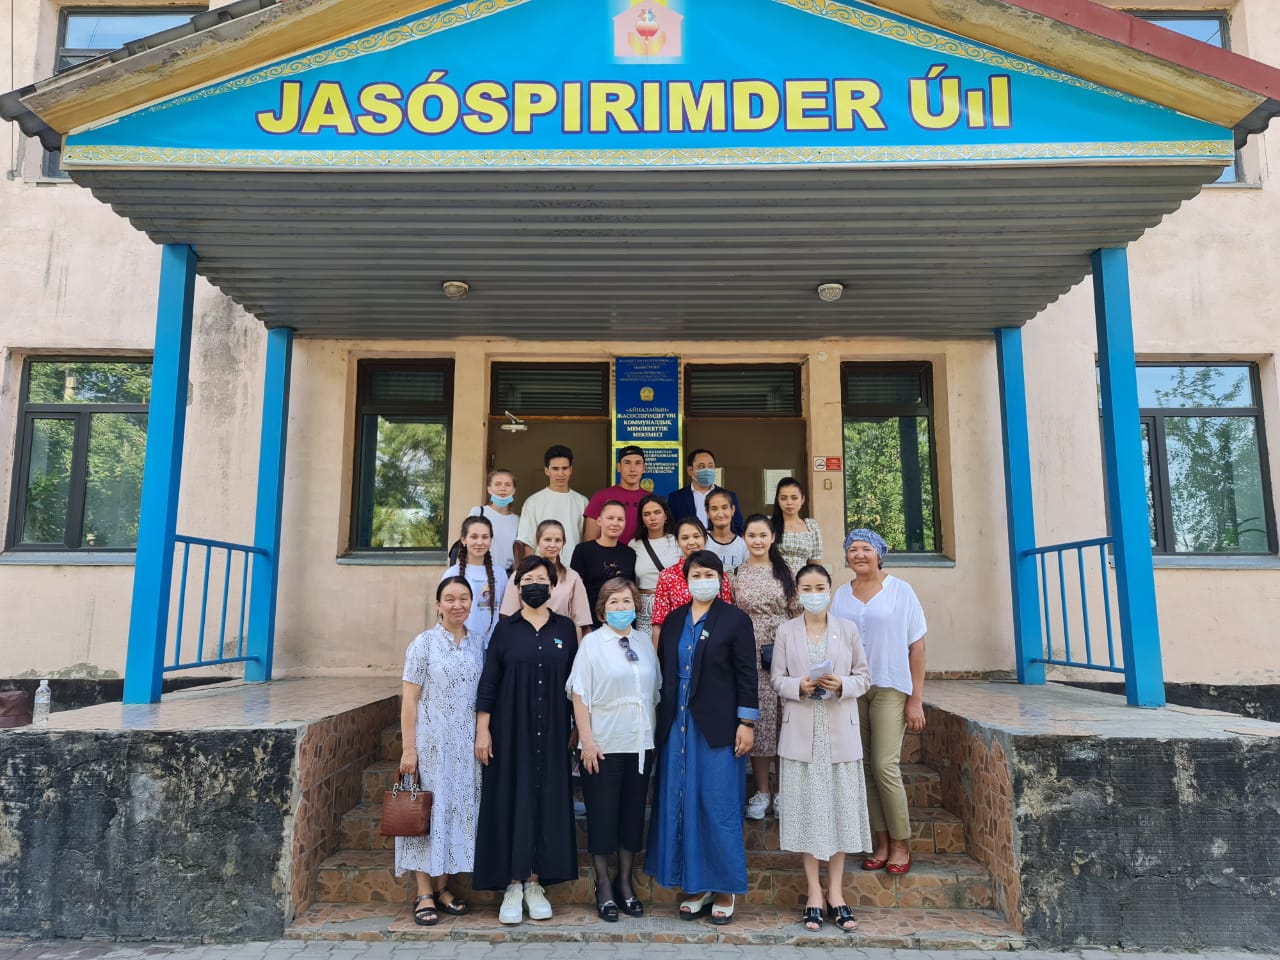 Встреча с выпускниками областного детского дома «Айналайын», проживающиех в Доме юношества, г. Талдыкорган